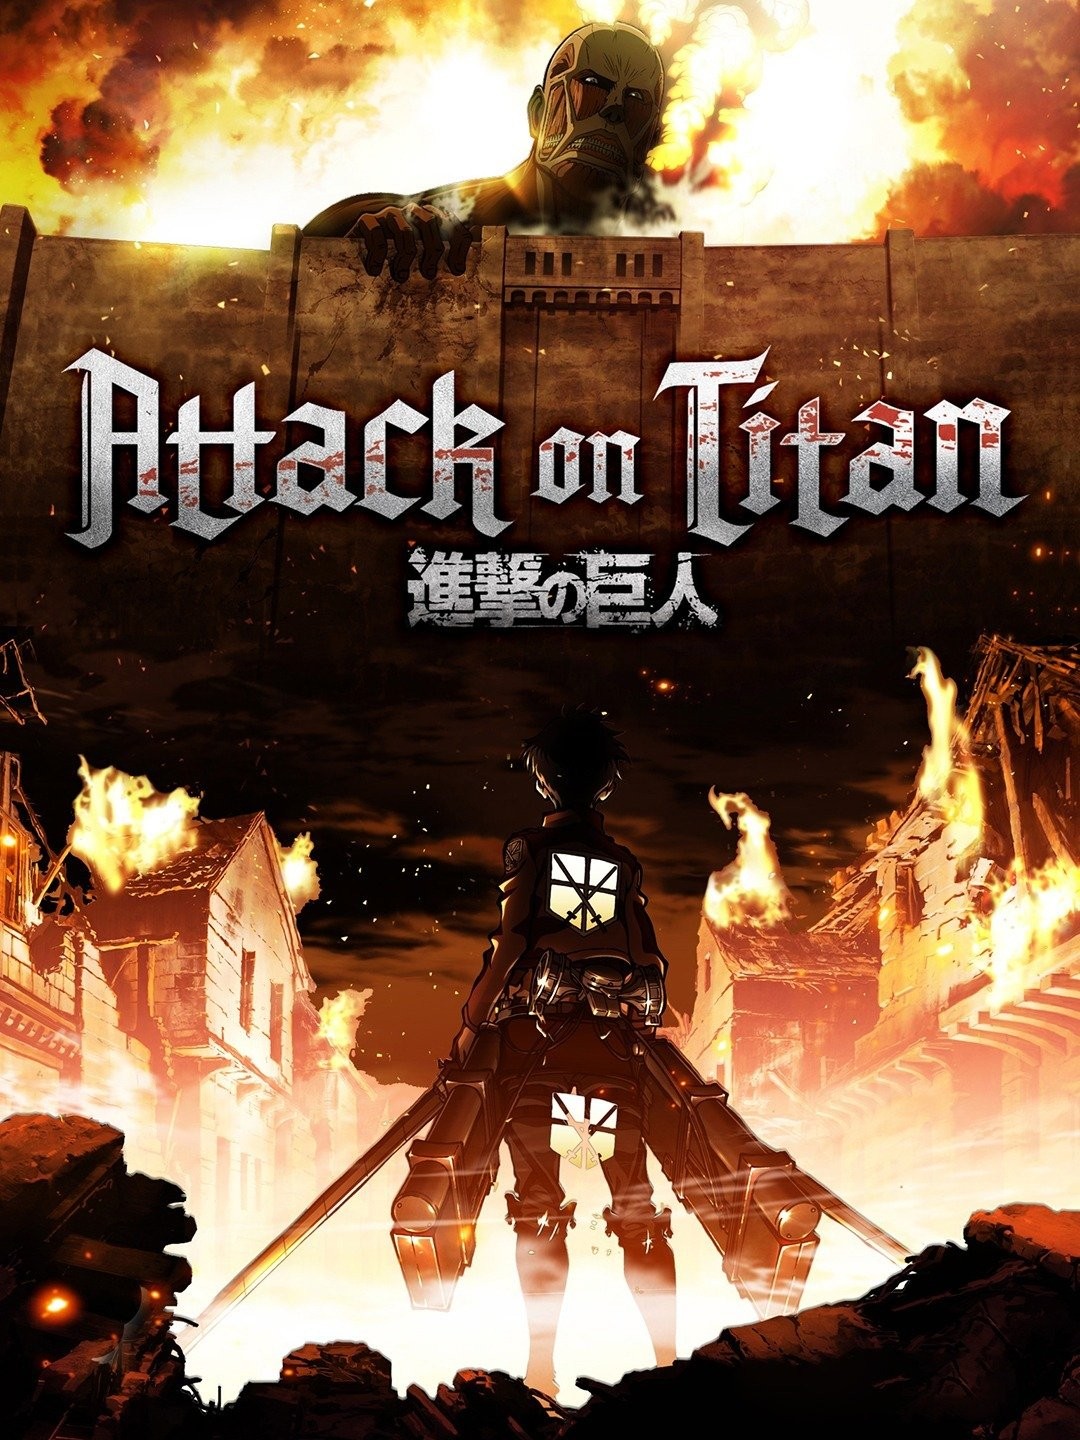 Best Episodes of 'Attack on Titan' to Rewatch